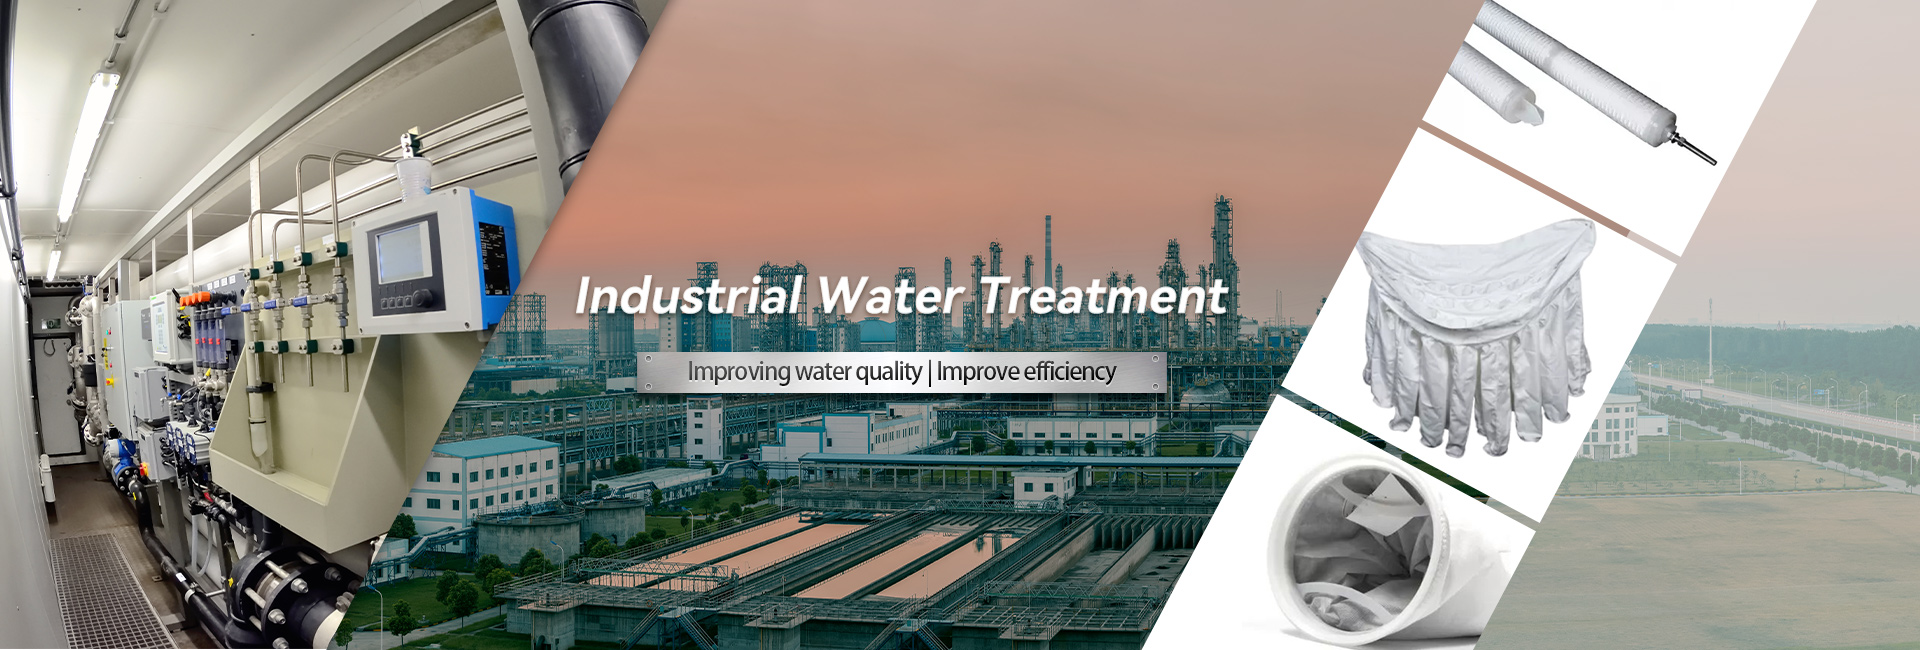 Industriell vattenbehandling av hög kvalitet